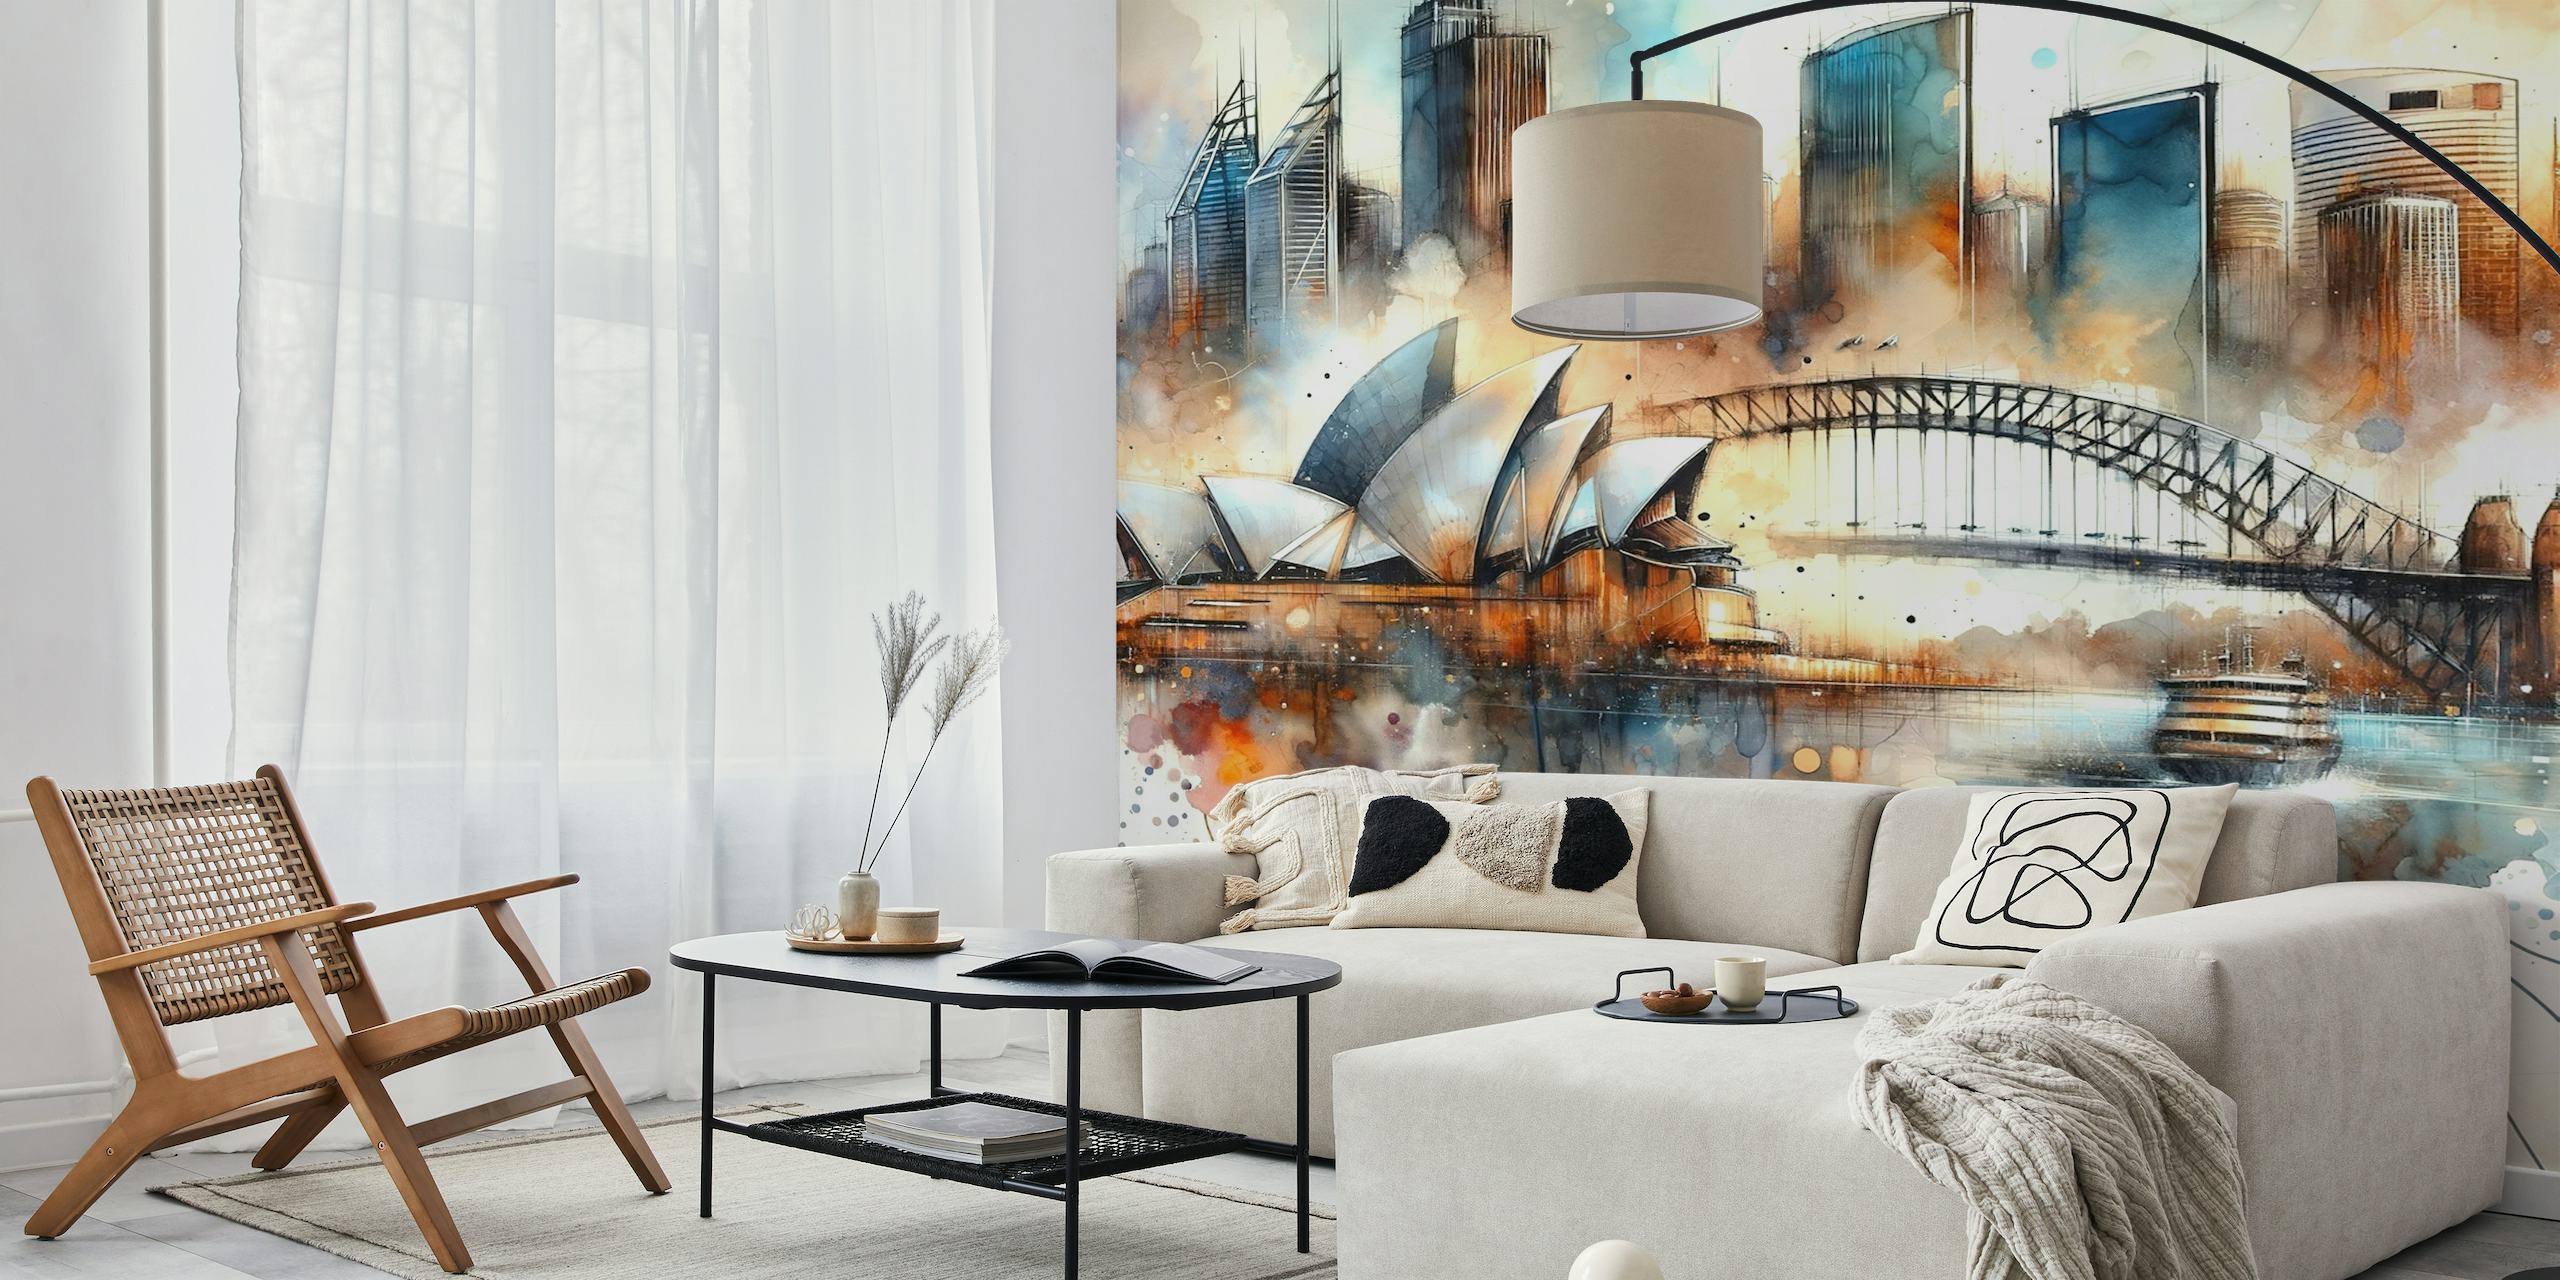 Pittura ad acquerello dello skyline di Sydney con l'Opera House e l'Harbour Bridge